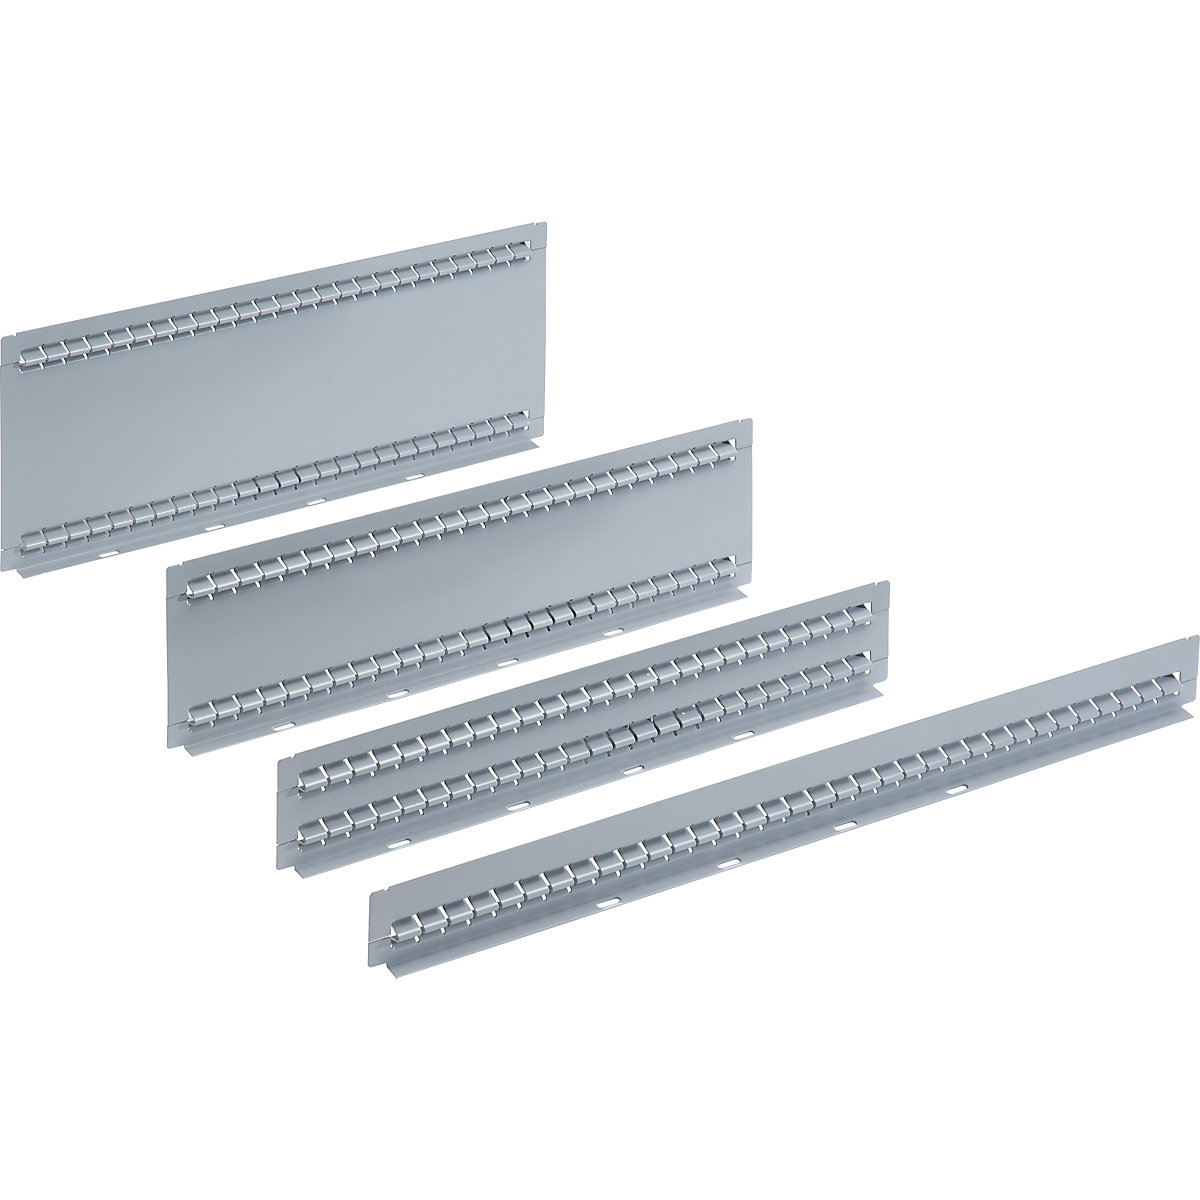 LISTA – Material de divisão de gavetas, embalagem = 5 unid., para gavetas com 50 mm de altura, parede ranhurada, comprimento 459 mm